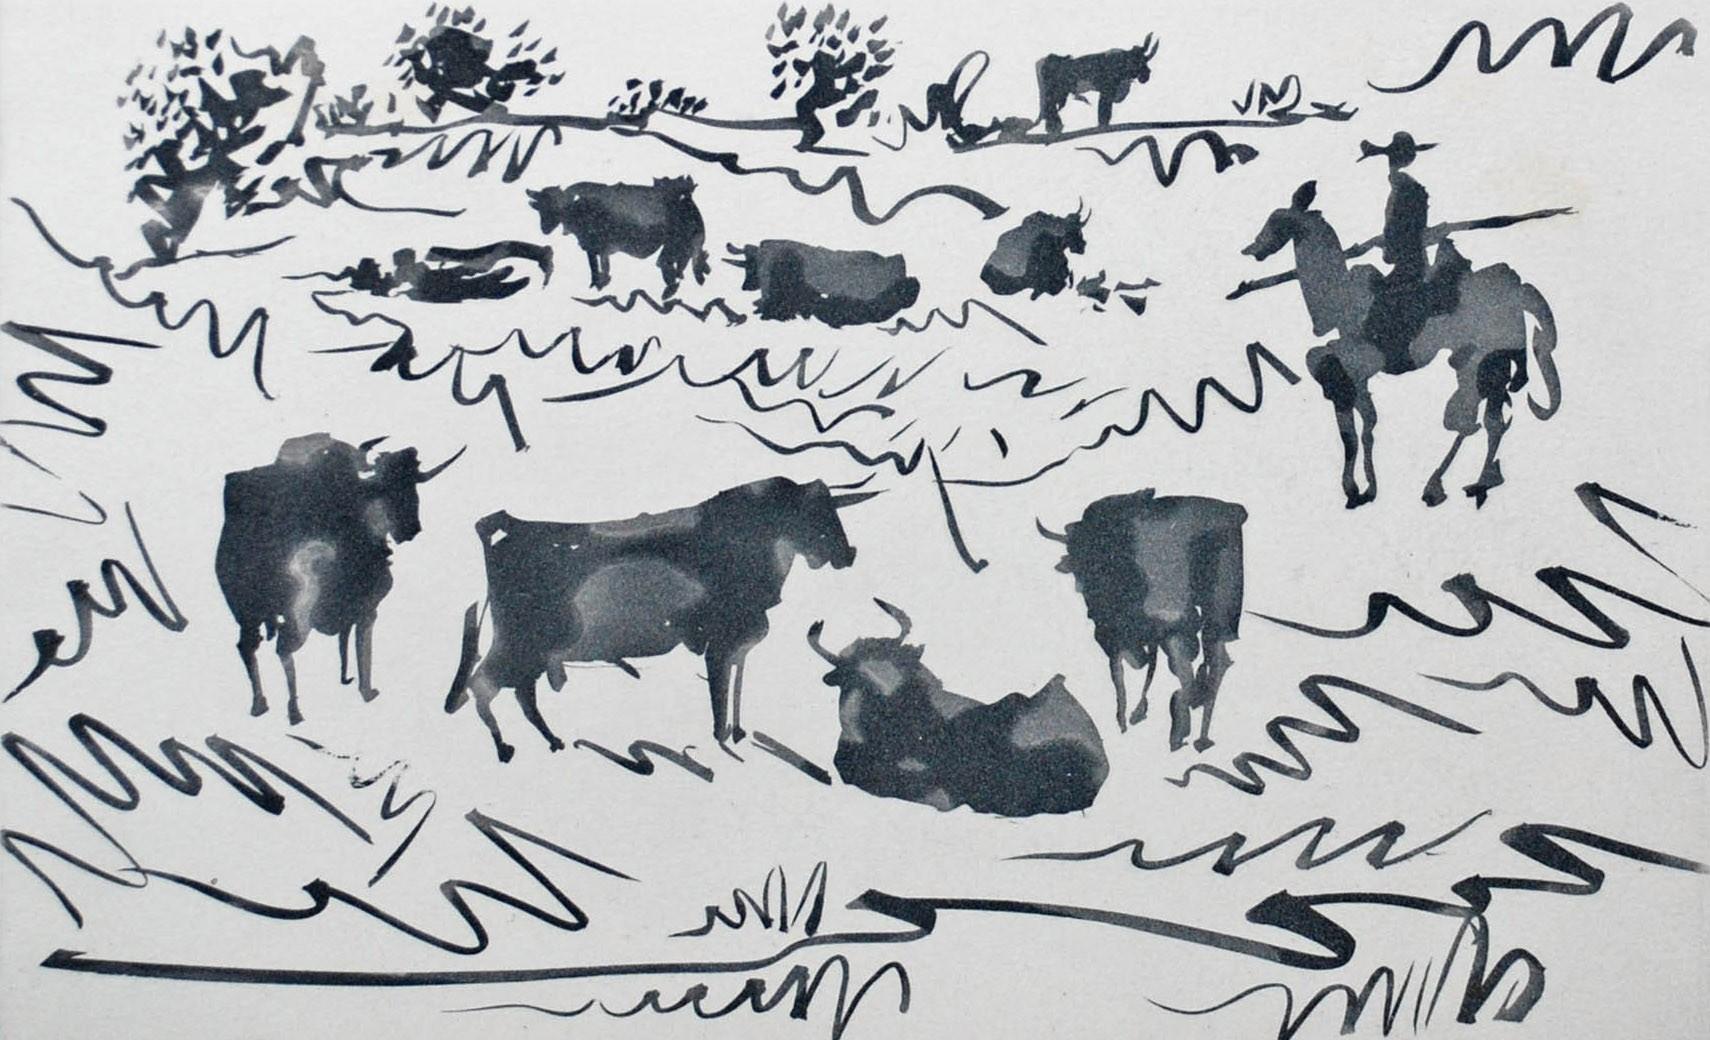 Pablo Picasso Animal Print - Toros en el Campo (Bulls in the Field)